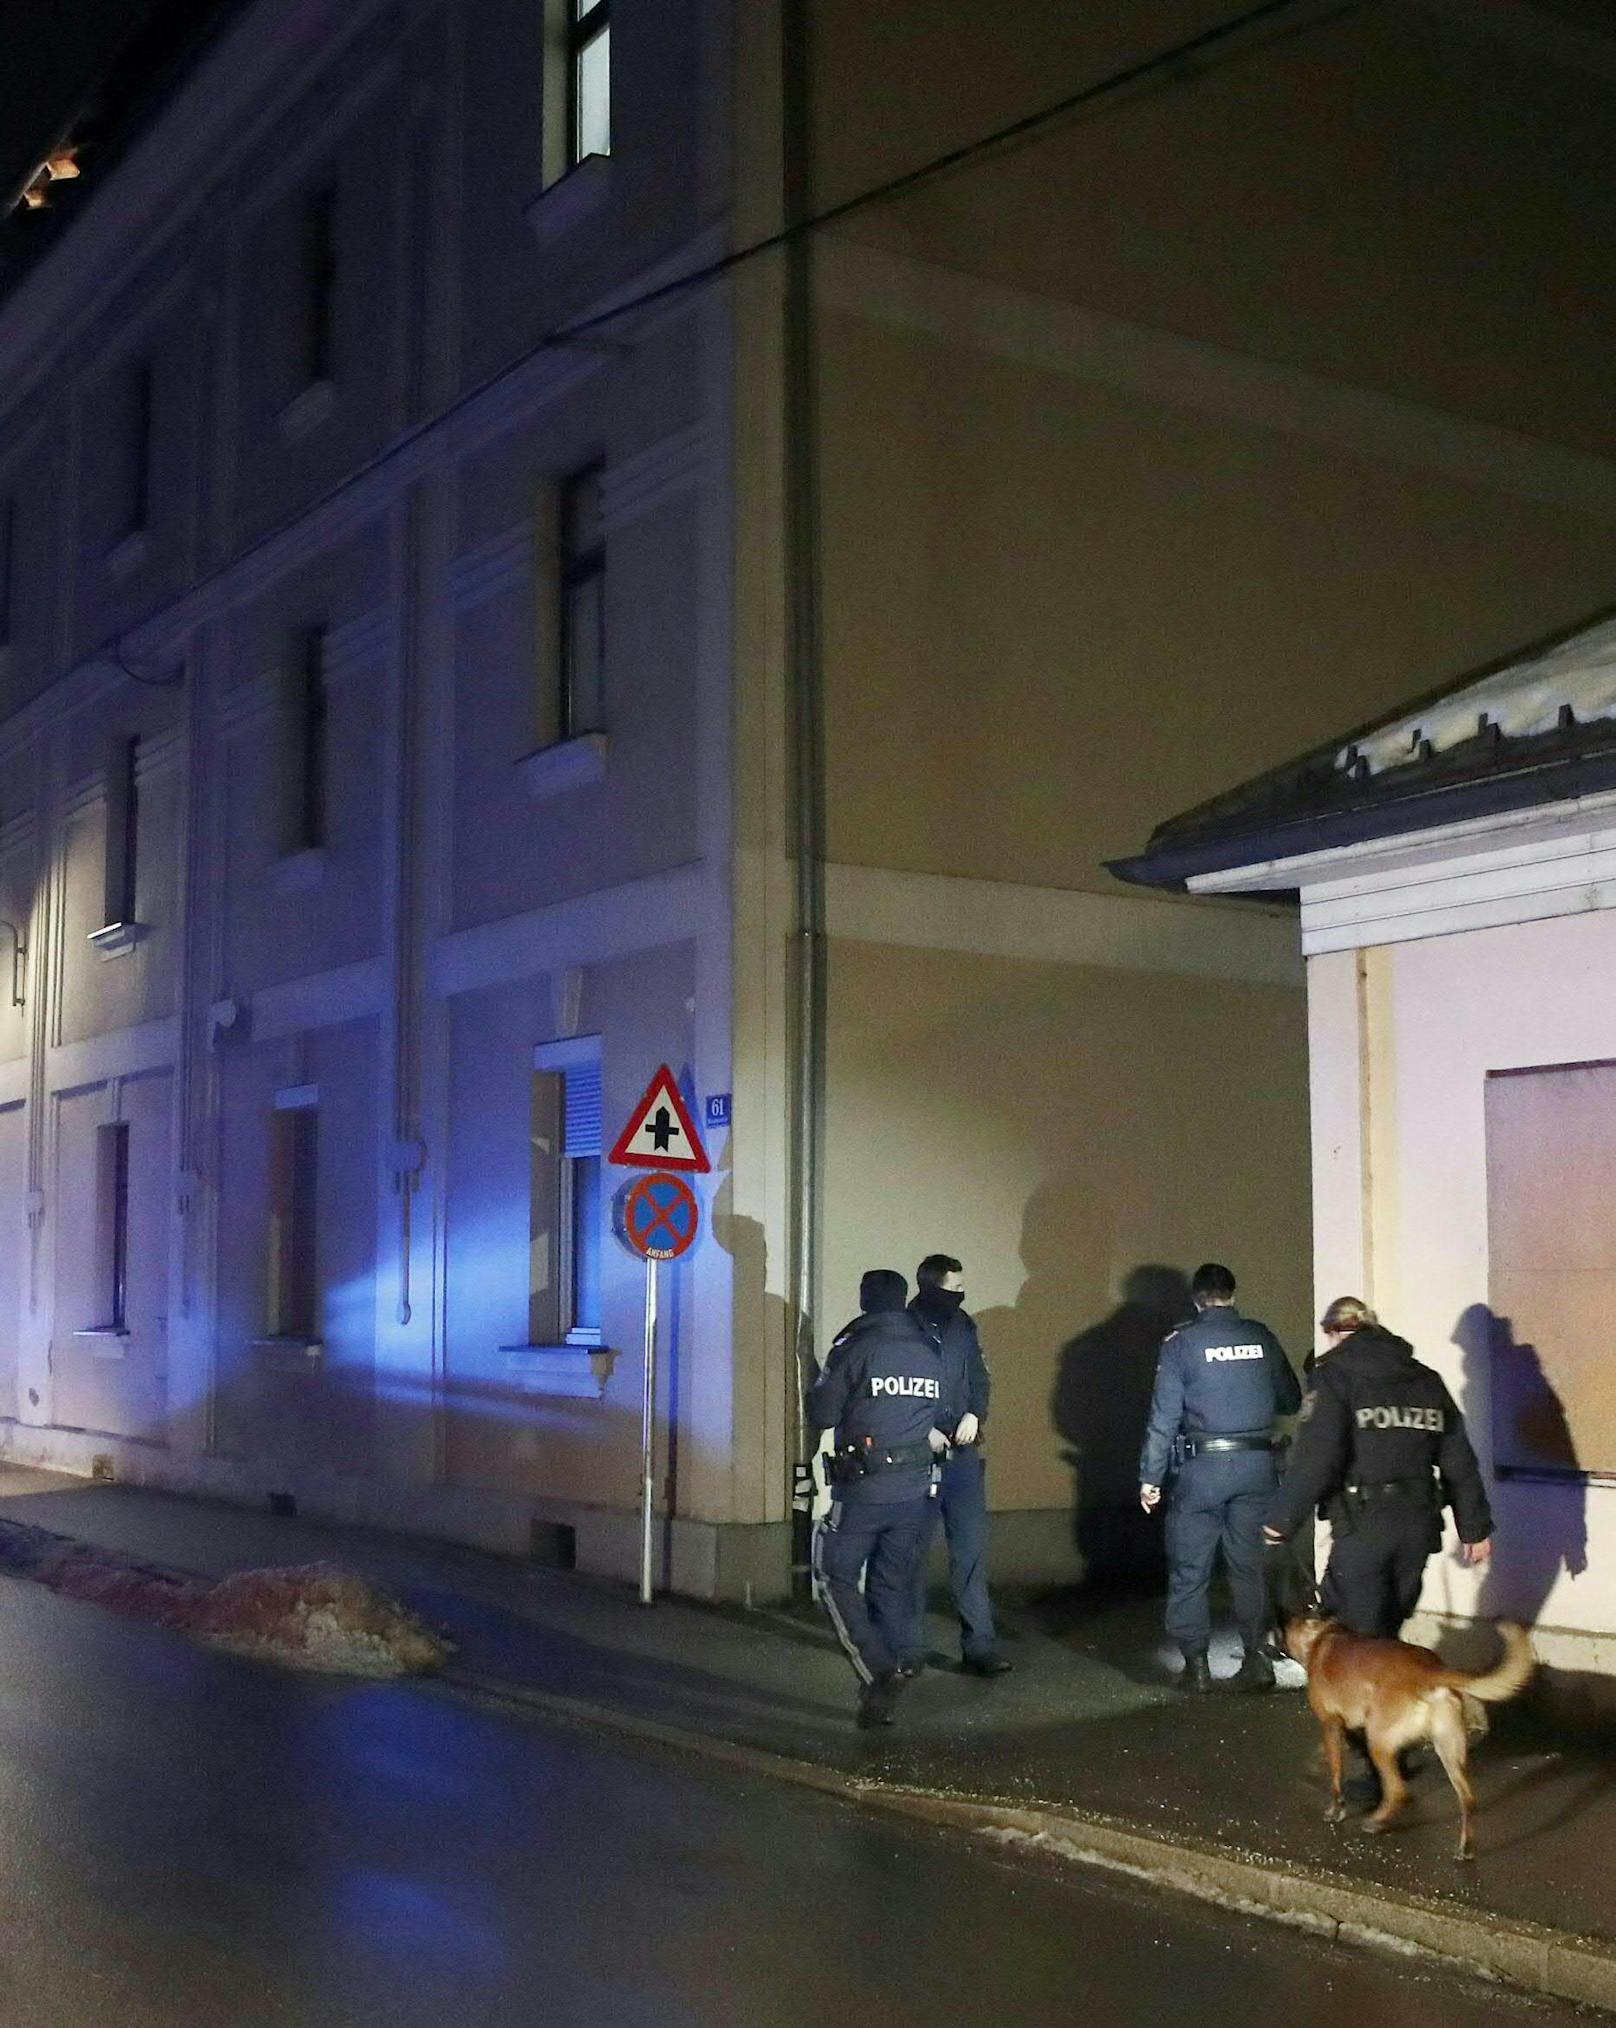 Cobra-Einsatz am Freitag in Kärnten! In Klagenfurt ist es zu einer Messer-Attacke auf einen Mann gekommen. Der Täter ist noch auf der Flucht.